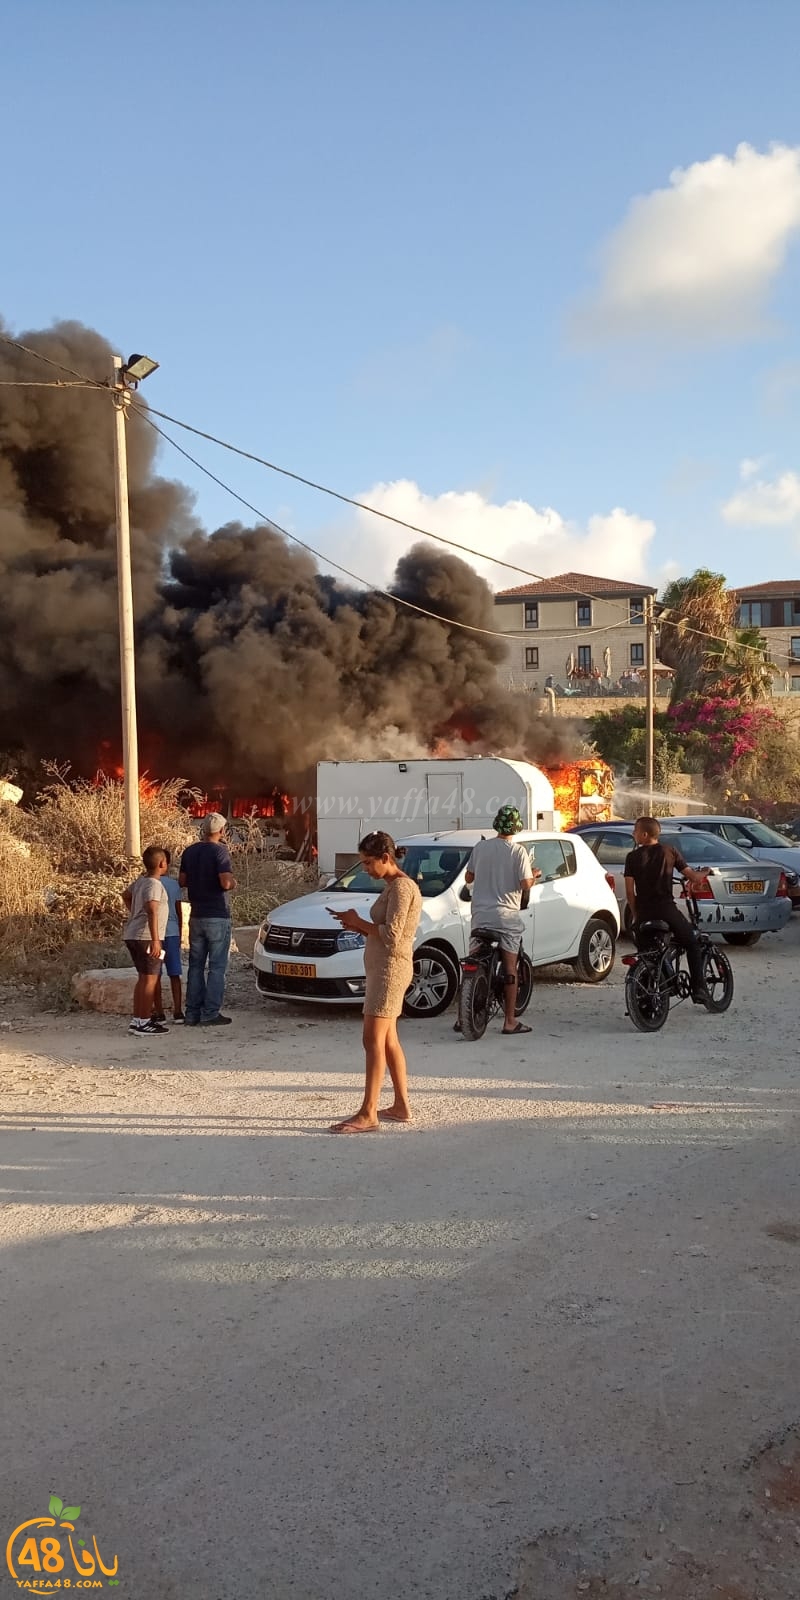  يافا: احتراق منزل متنقّل بالقرب من مدخل ميناء يافا دون اصابات 